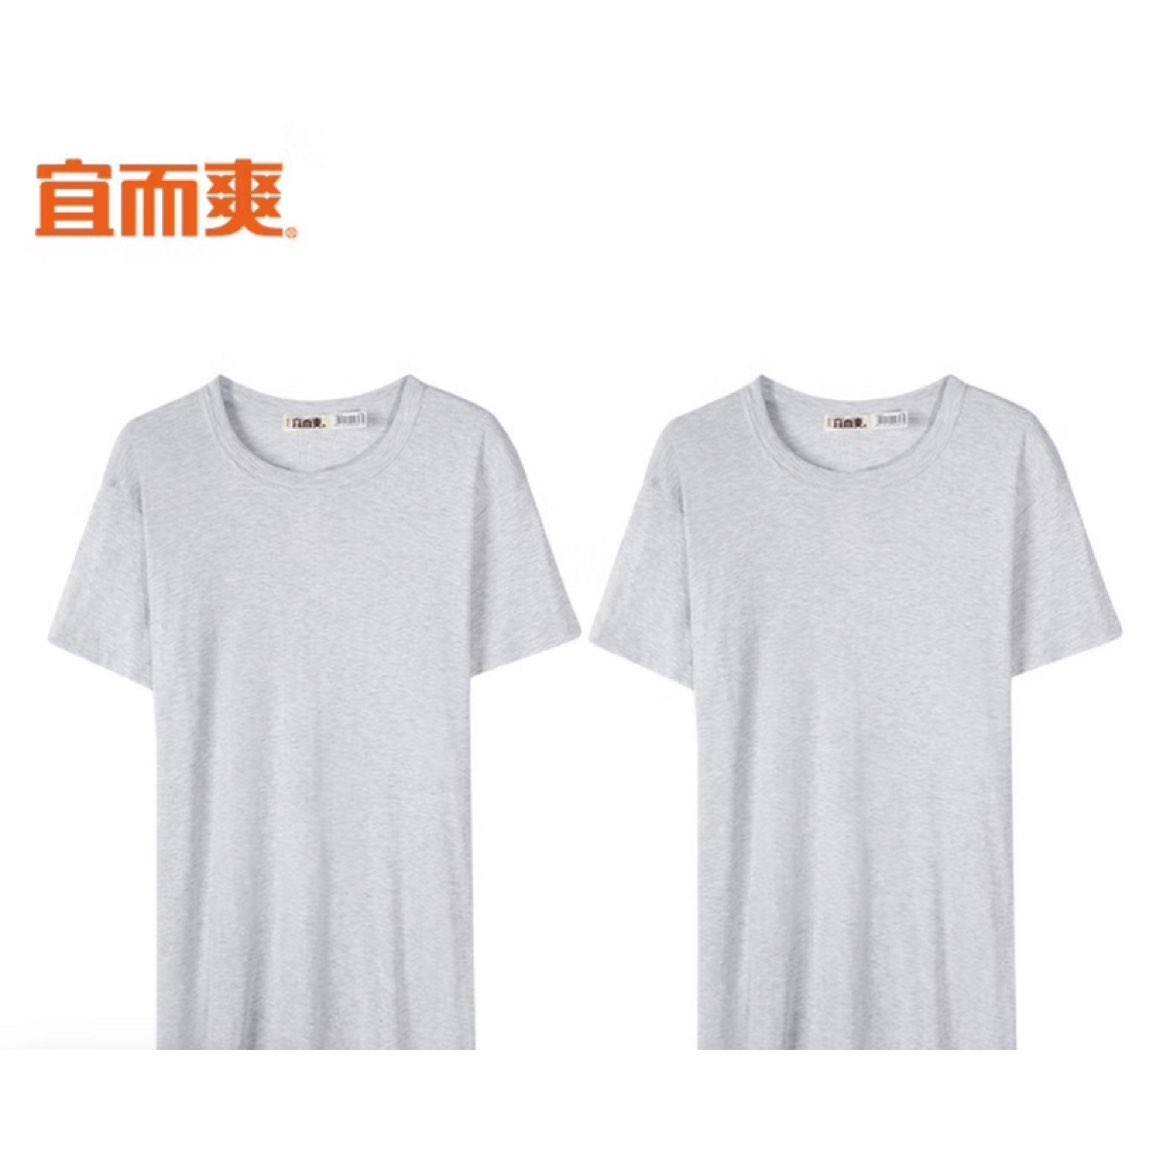 需凑单：宜而爽 2件装男士T恤+男新疆棉背心3件 20.88元（共付38.75元）